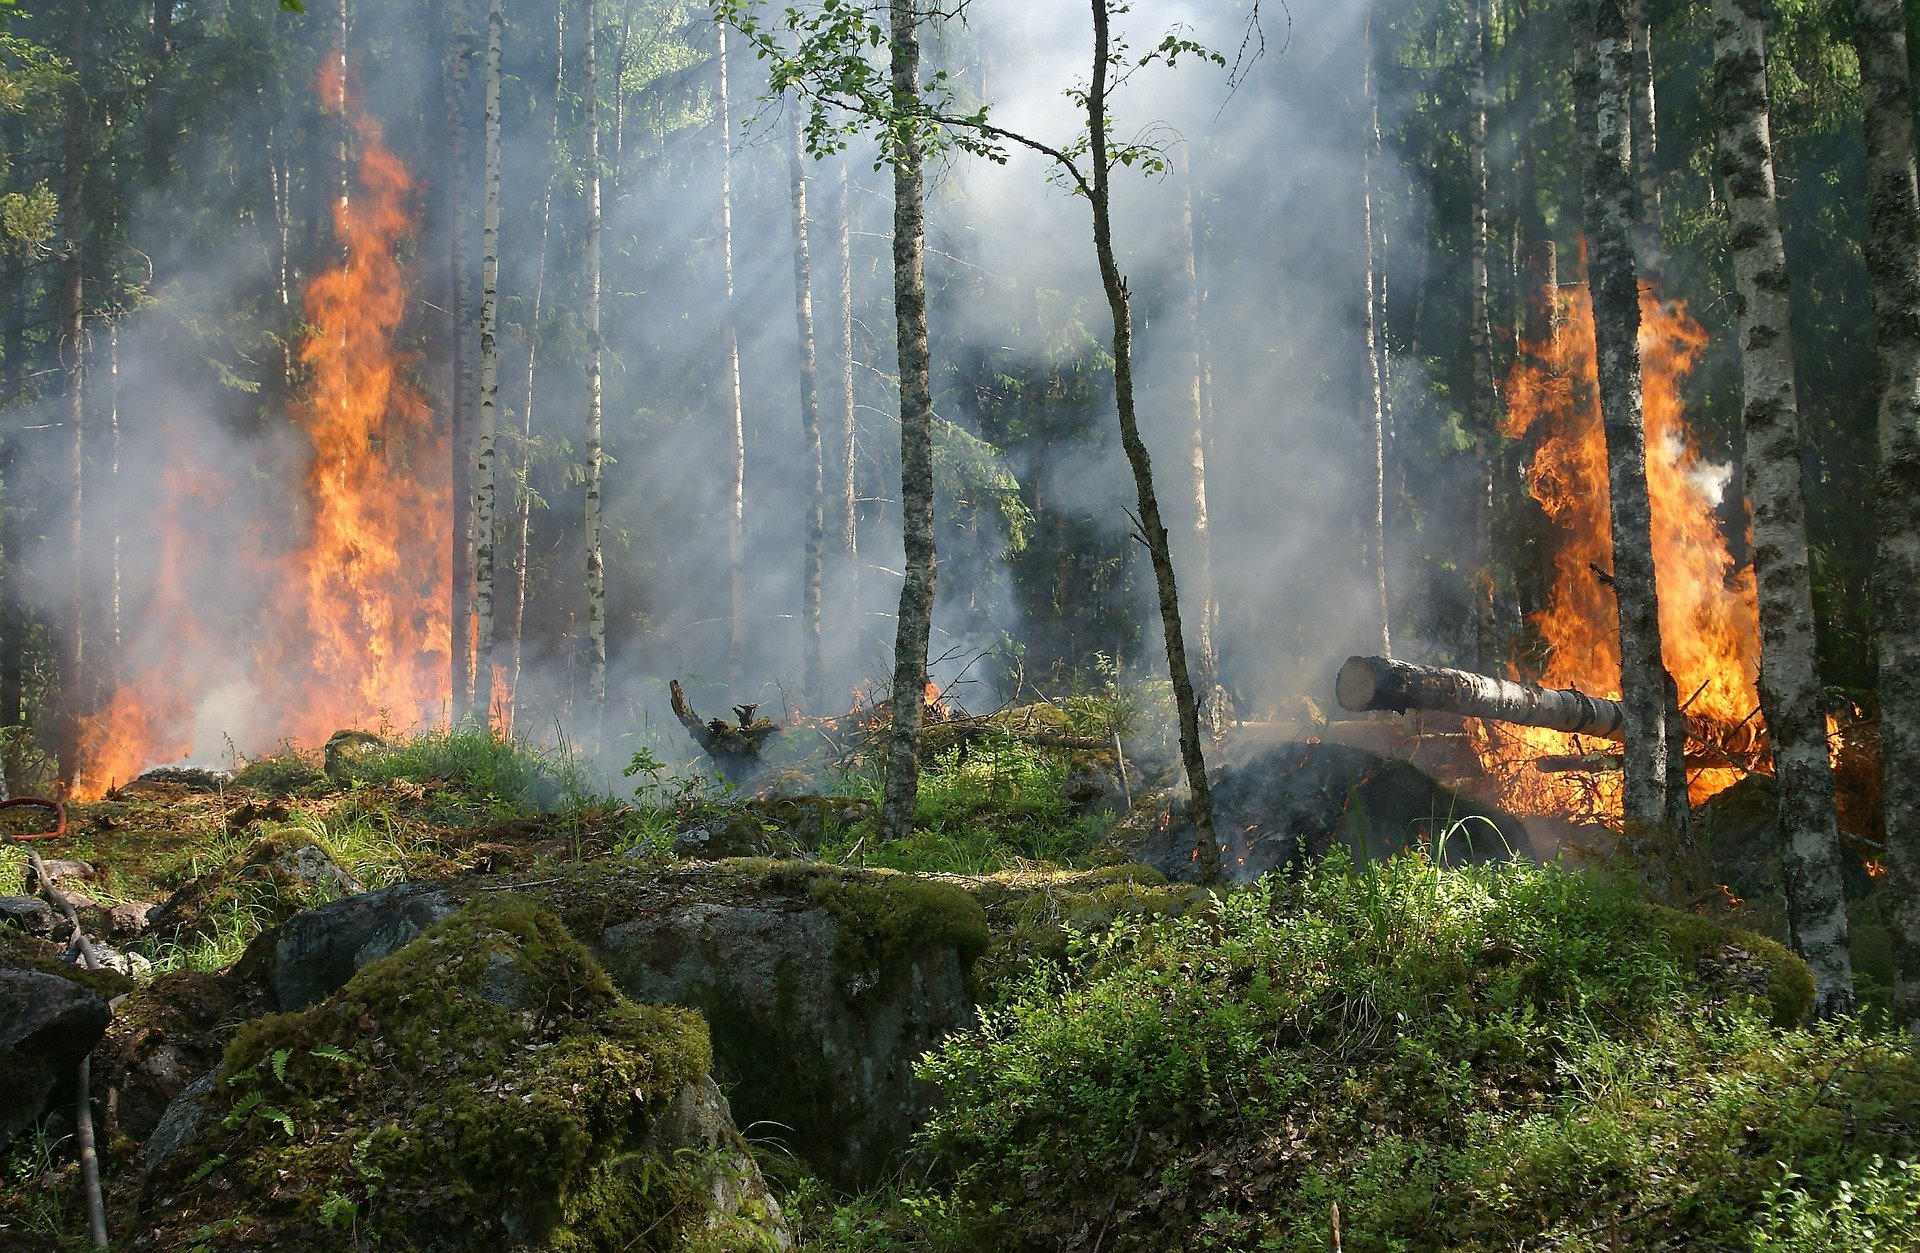  Waldbrand (Bild von Ylvers auf Pixabay) 